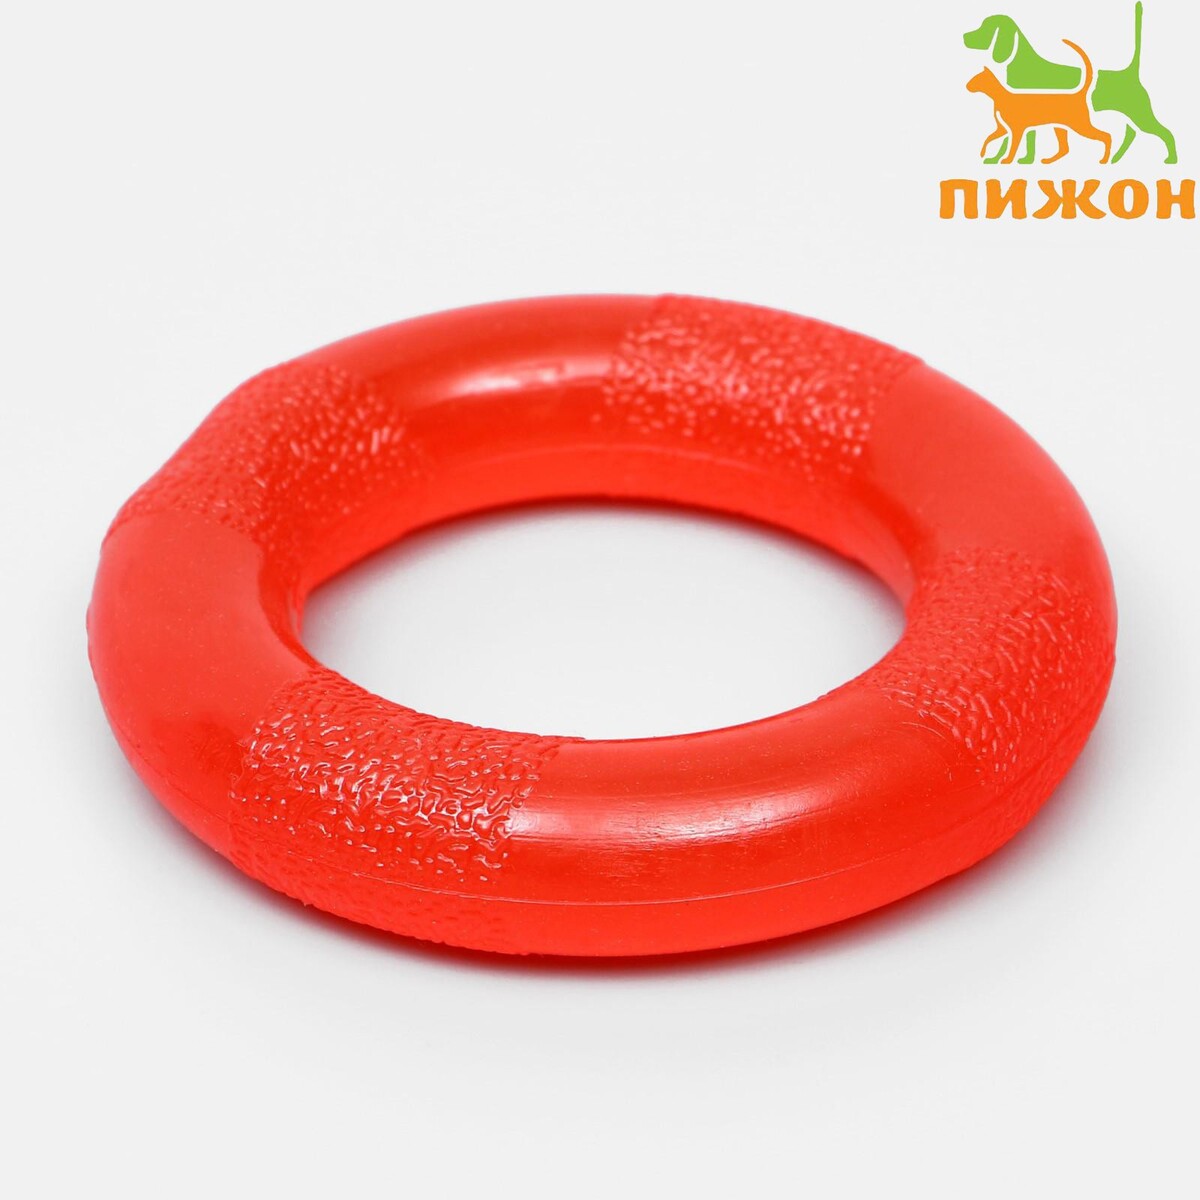 Игрушка кольцо рельефное из термопластичной резины не тонет 9 5 см оранжевое